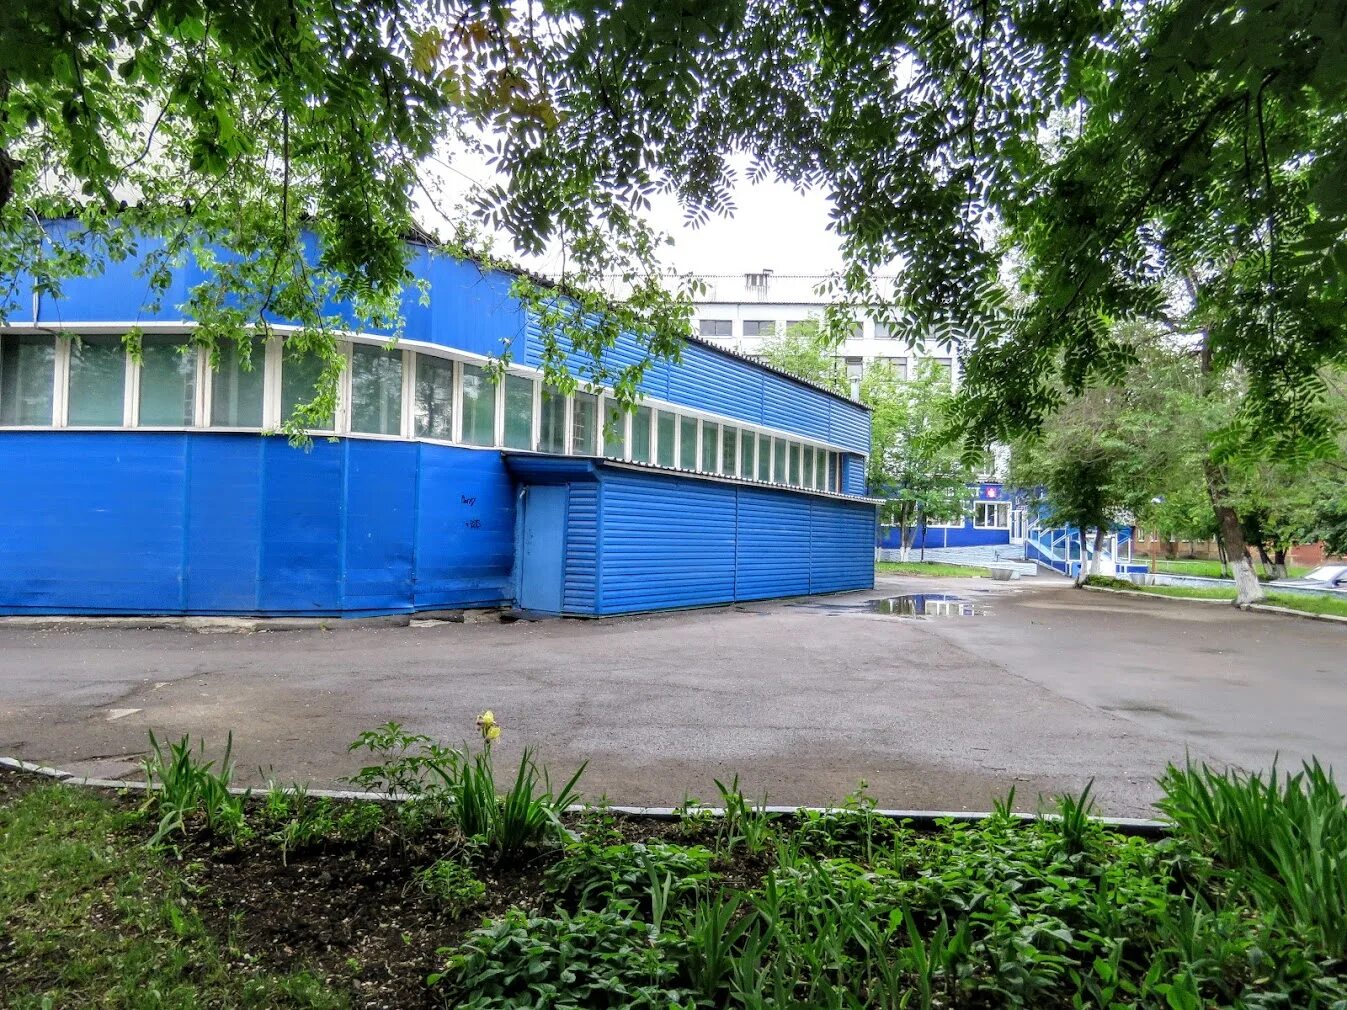 Ленина 111 Кемерово. Сайт 5 поликлиники кемерово